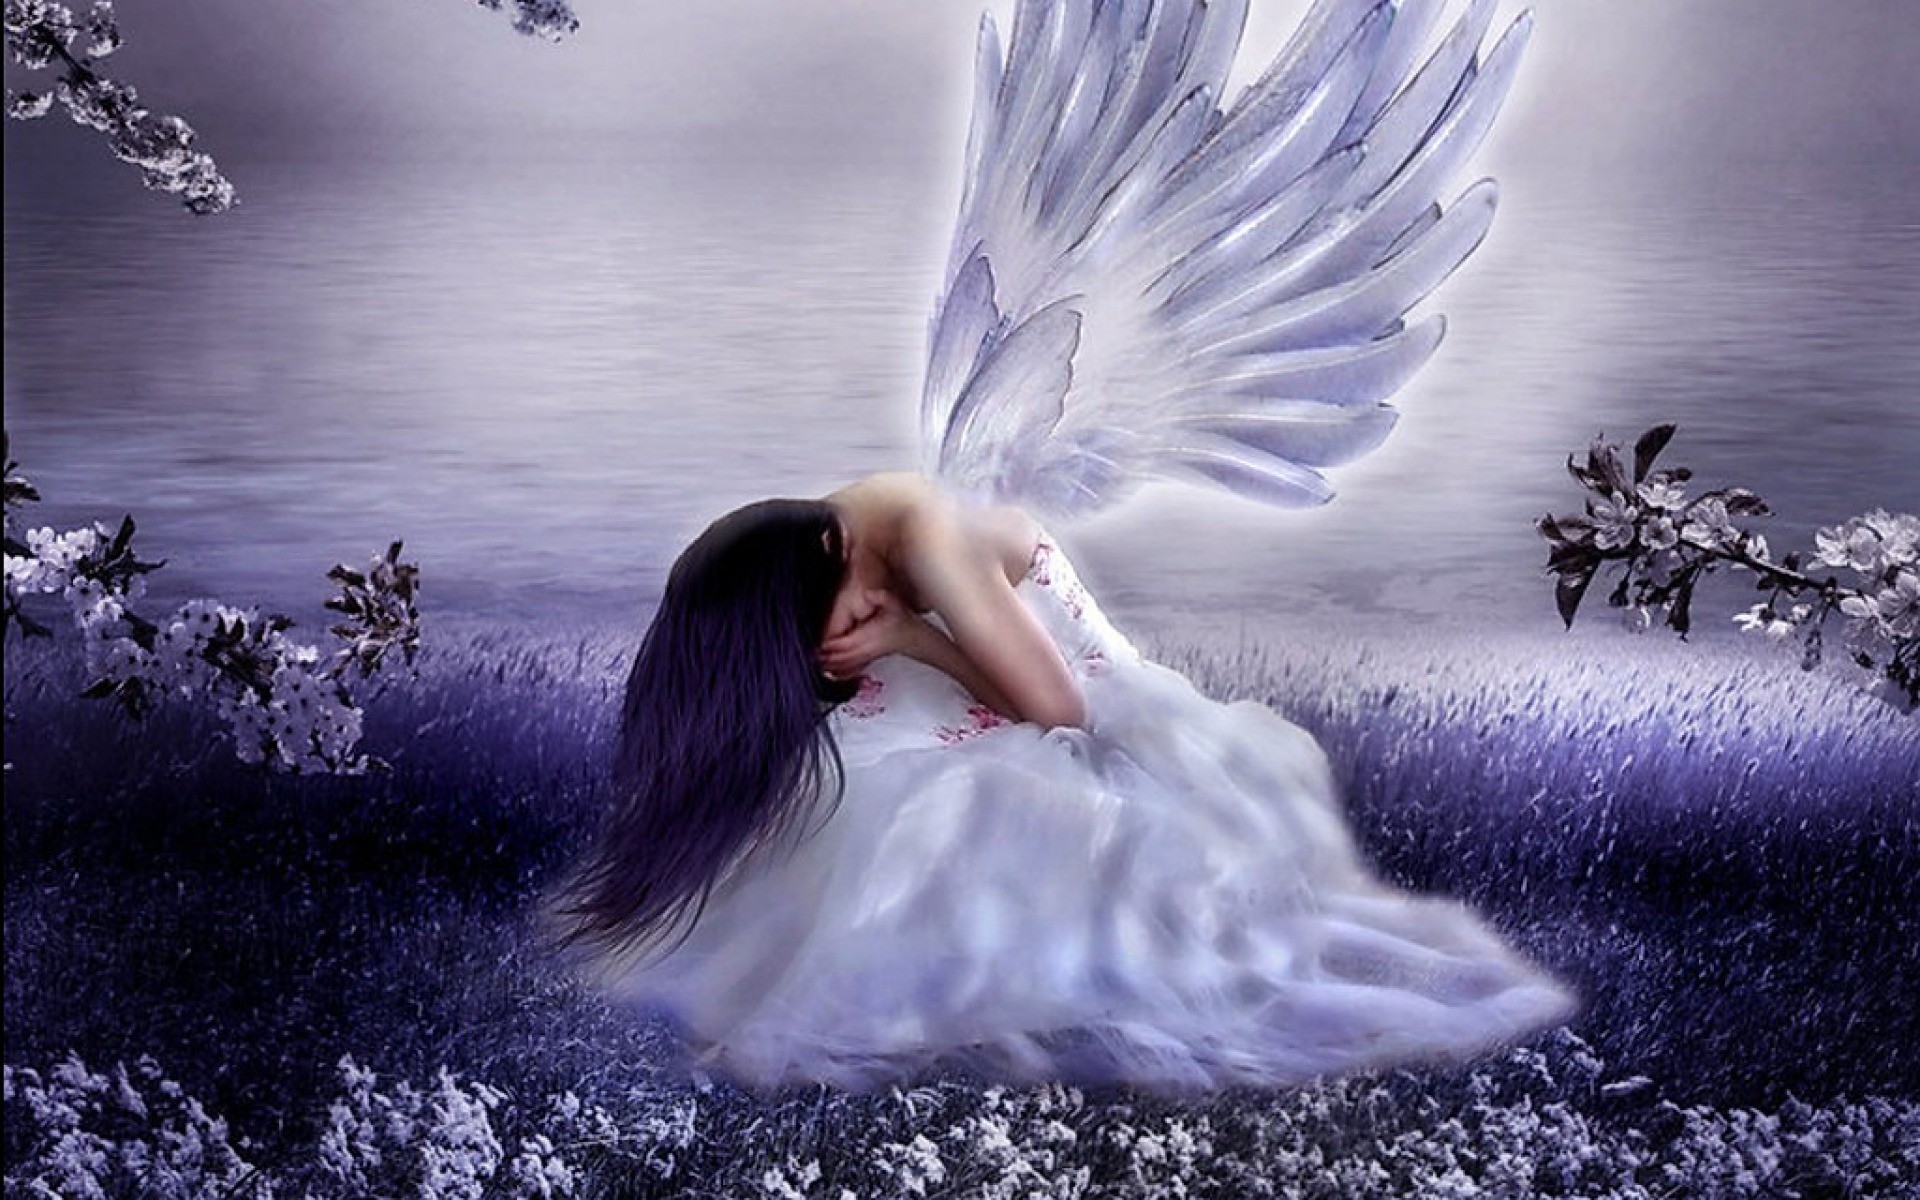 Weeping Angel Wallpaper Image